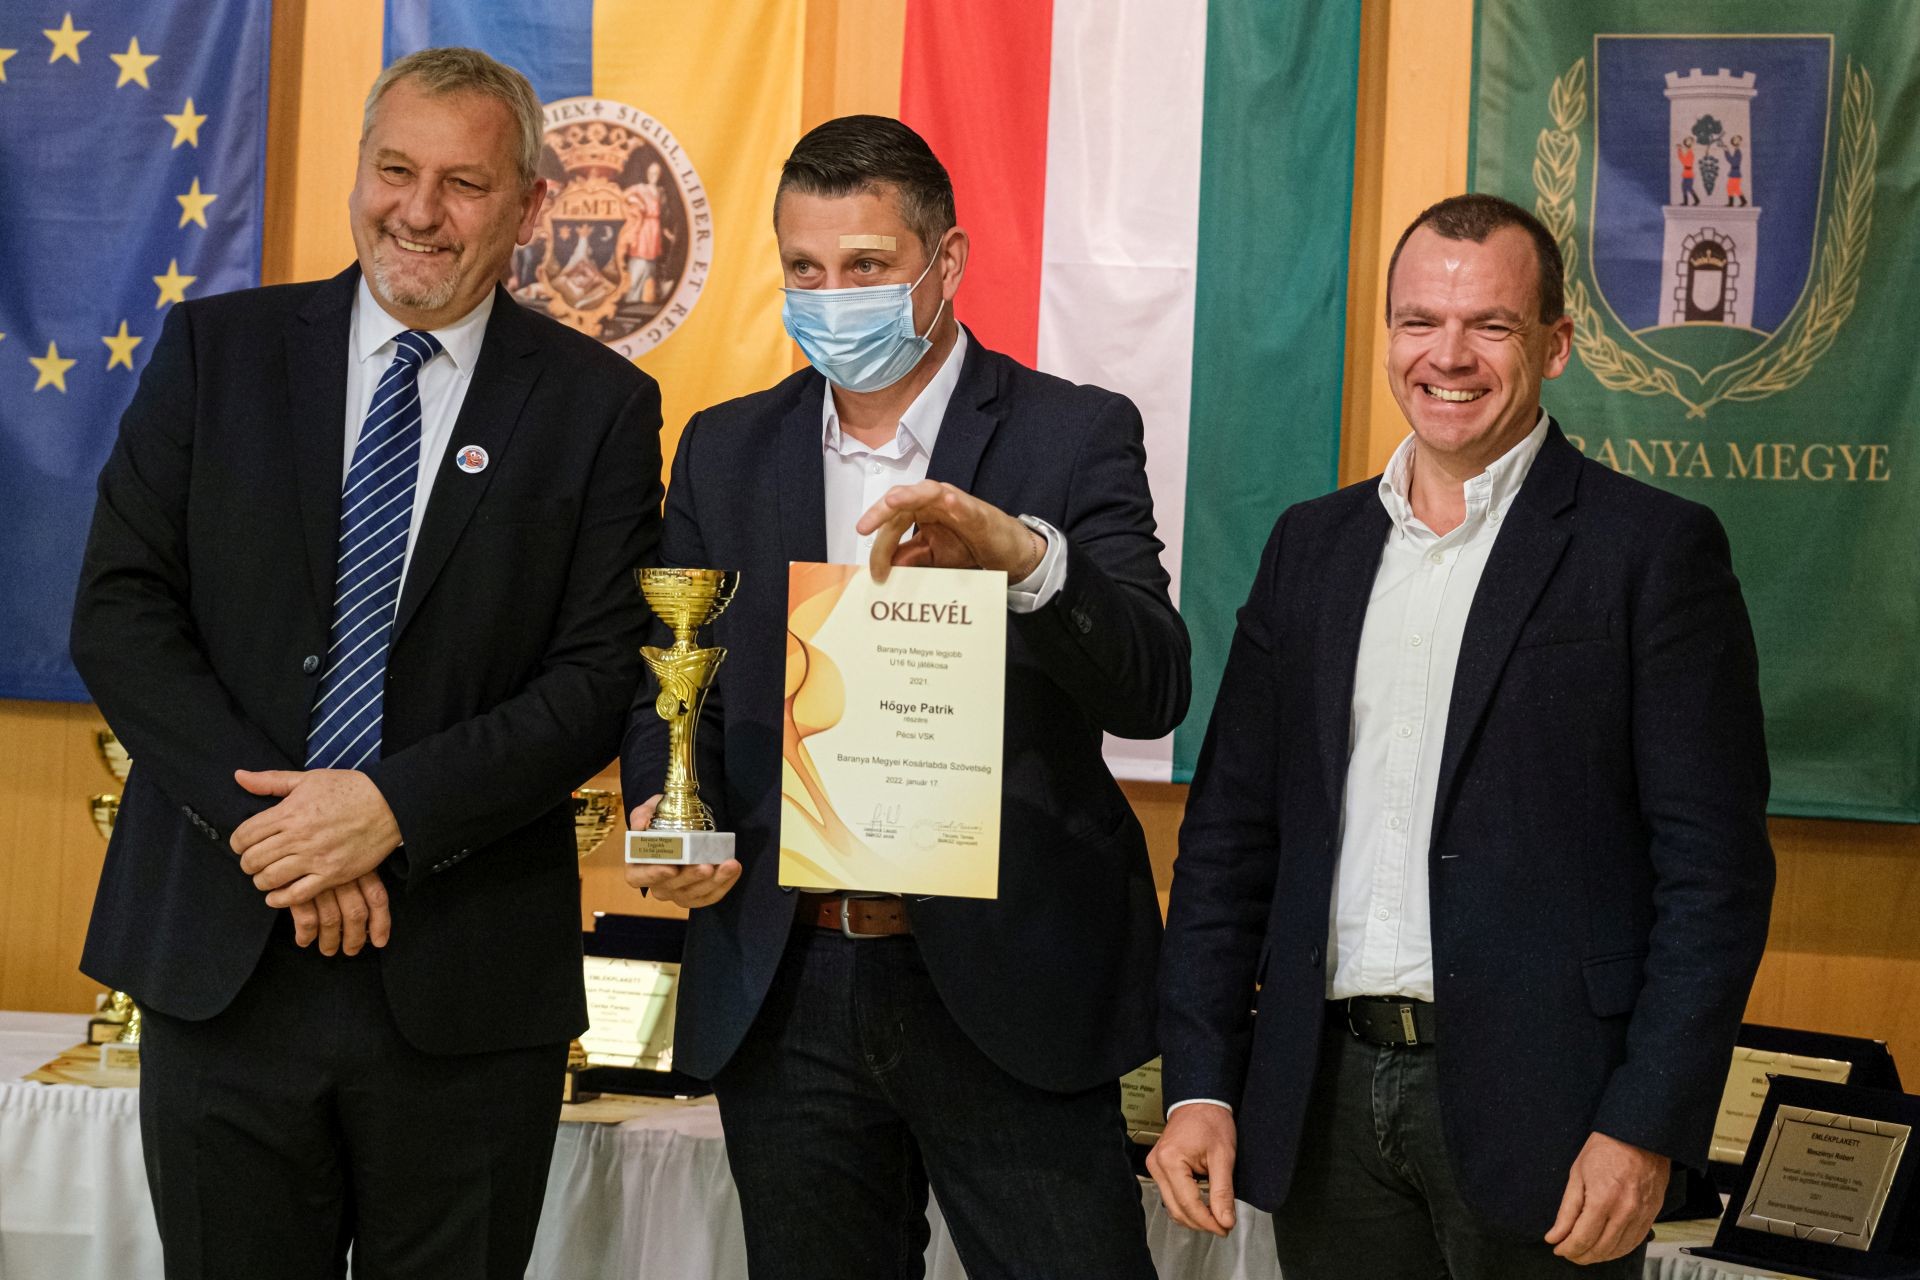 Hőgye Patrik a díjátadóval egyidőben az NBI/B-s csapatunkat erősítette Baján, a díjat a PVSK-Panthers ügyvezetője Bán Gábor vette át Patrik nevében.